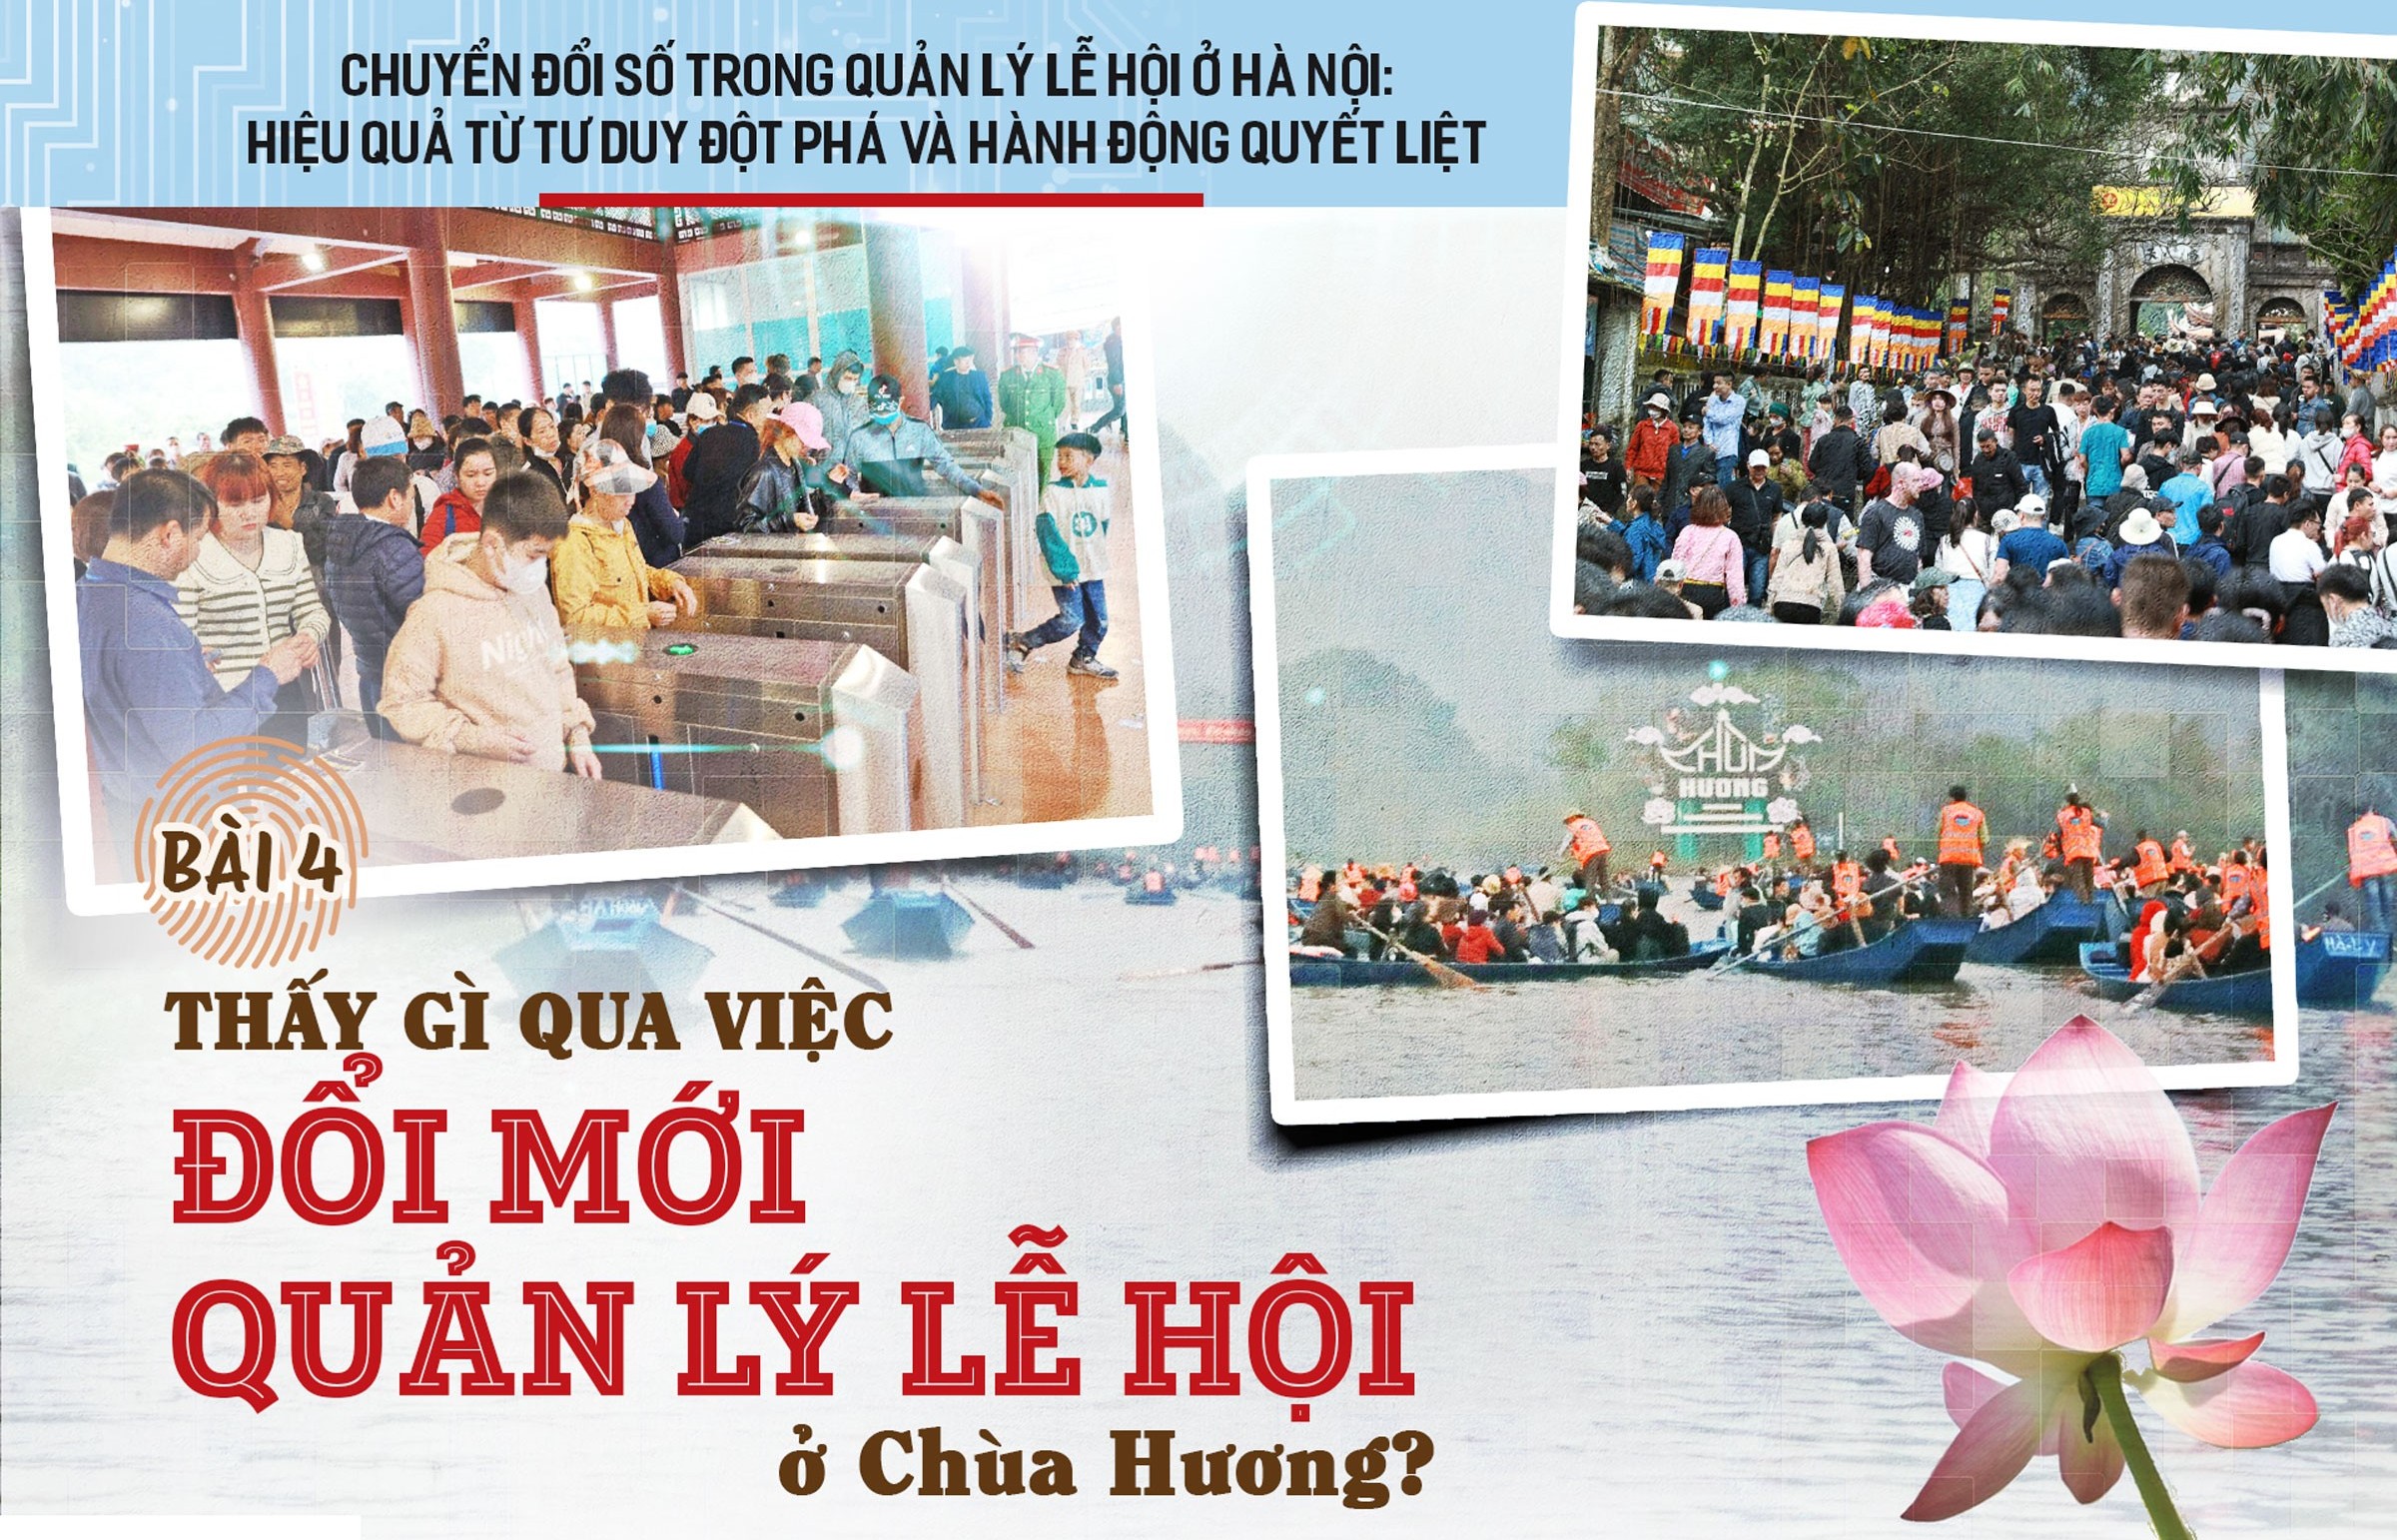 Bài 4: Thấy gì qua việc đổi mới quản lý lễ hội ở chùa Hương?